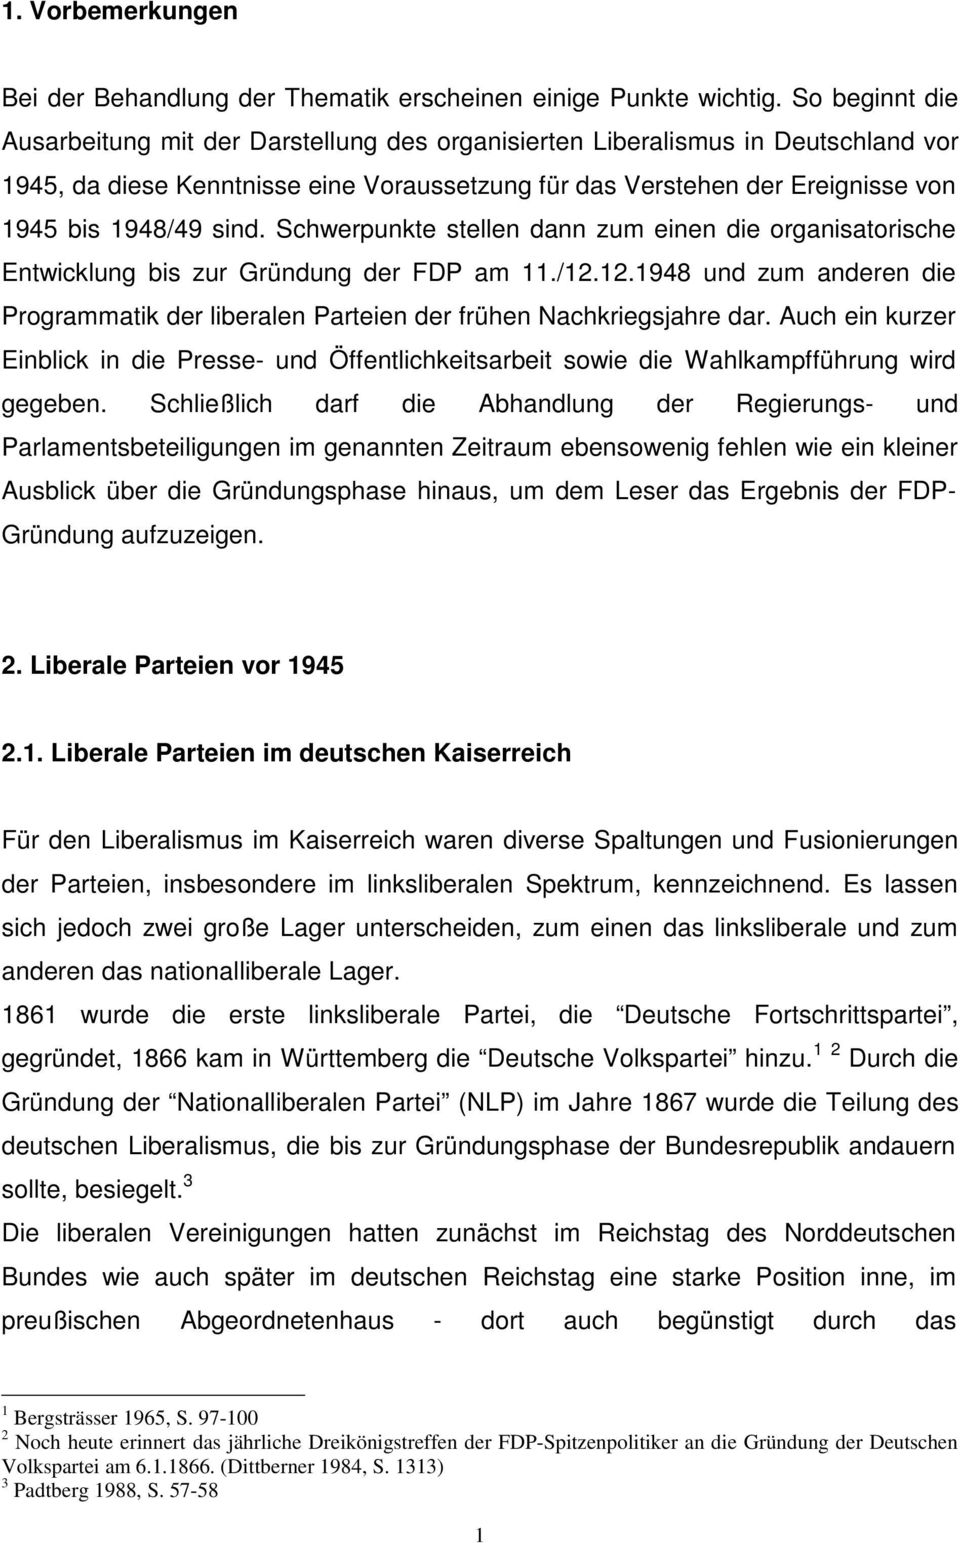 sind. Schwerpunkte stellen dann zum einen die organisatorische Entwicklung bis zur Gründung der FDP am 11./12.